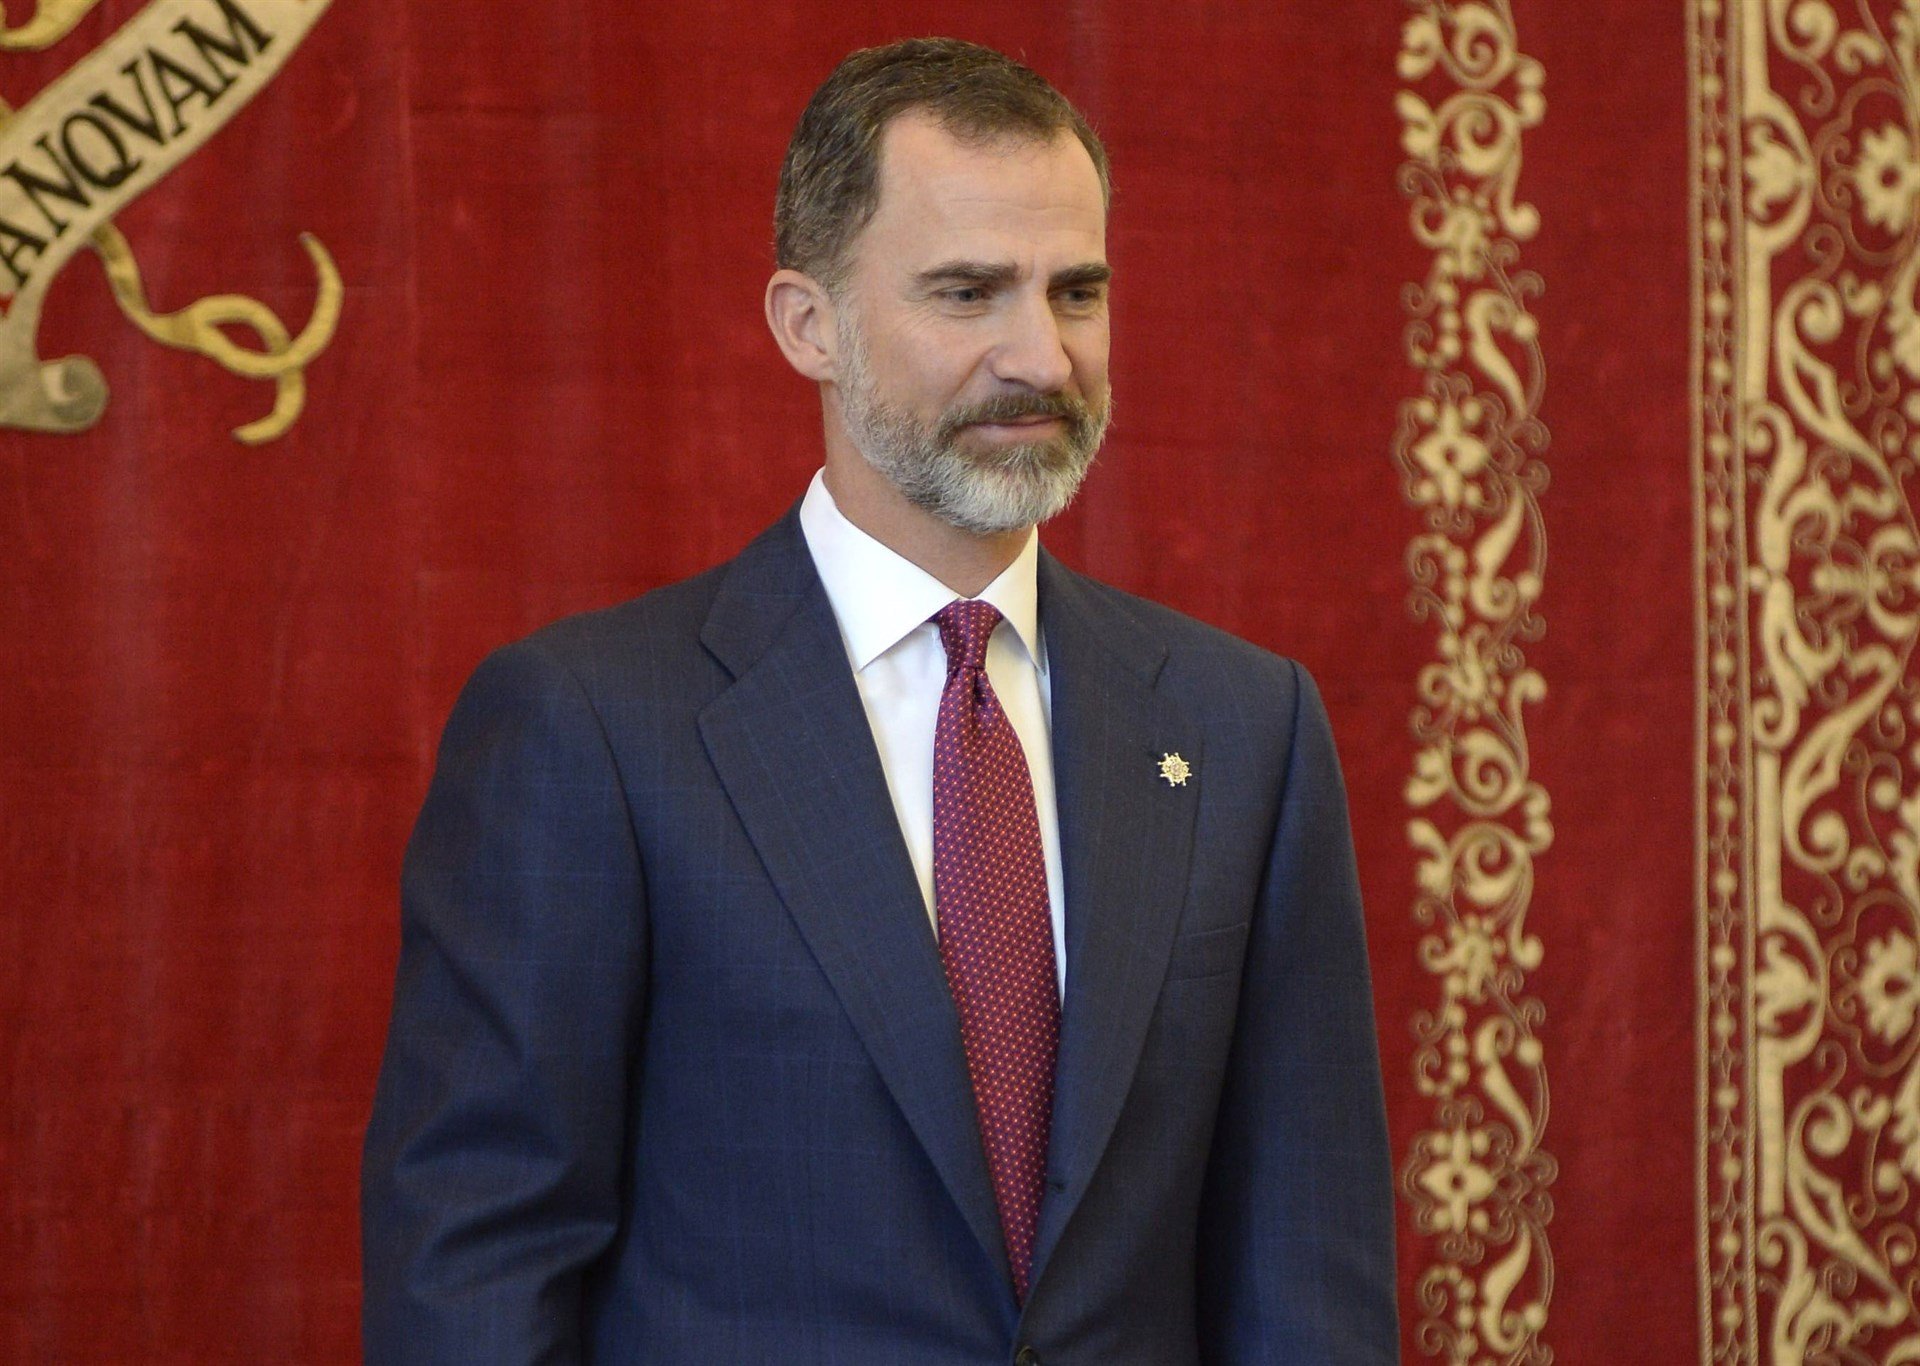 El discurs del Rei: 15 vegades 'Espanya' i 'espanyols' en només 5 minuts